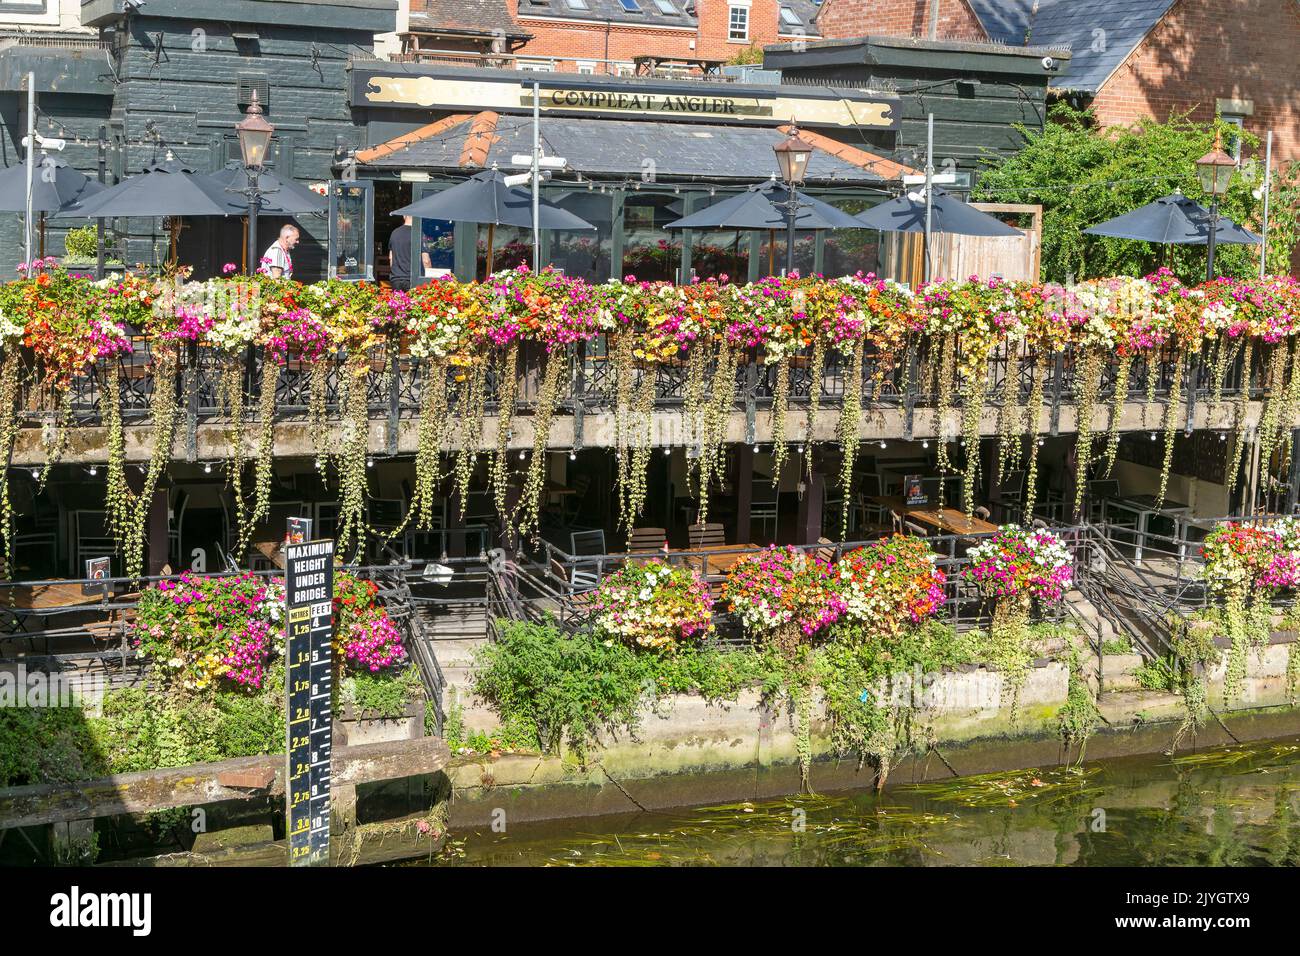 Floering plantes dans des paniers suspendus sur la rivière Wensum, pub Compleat Angler, Norwich, Norfolk, Engnd, ROYAUME-UNI Banque D'Images